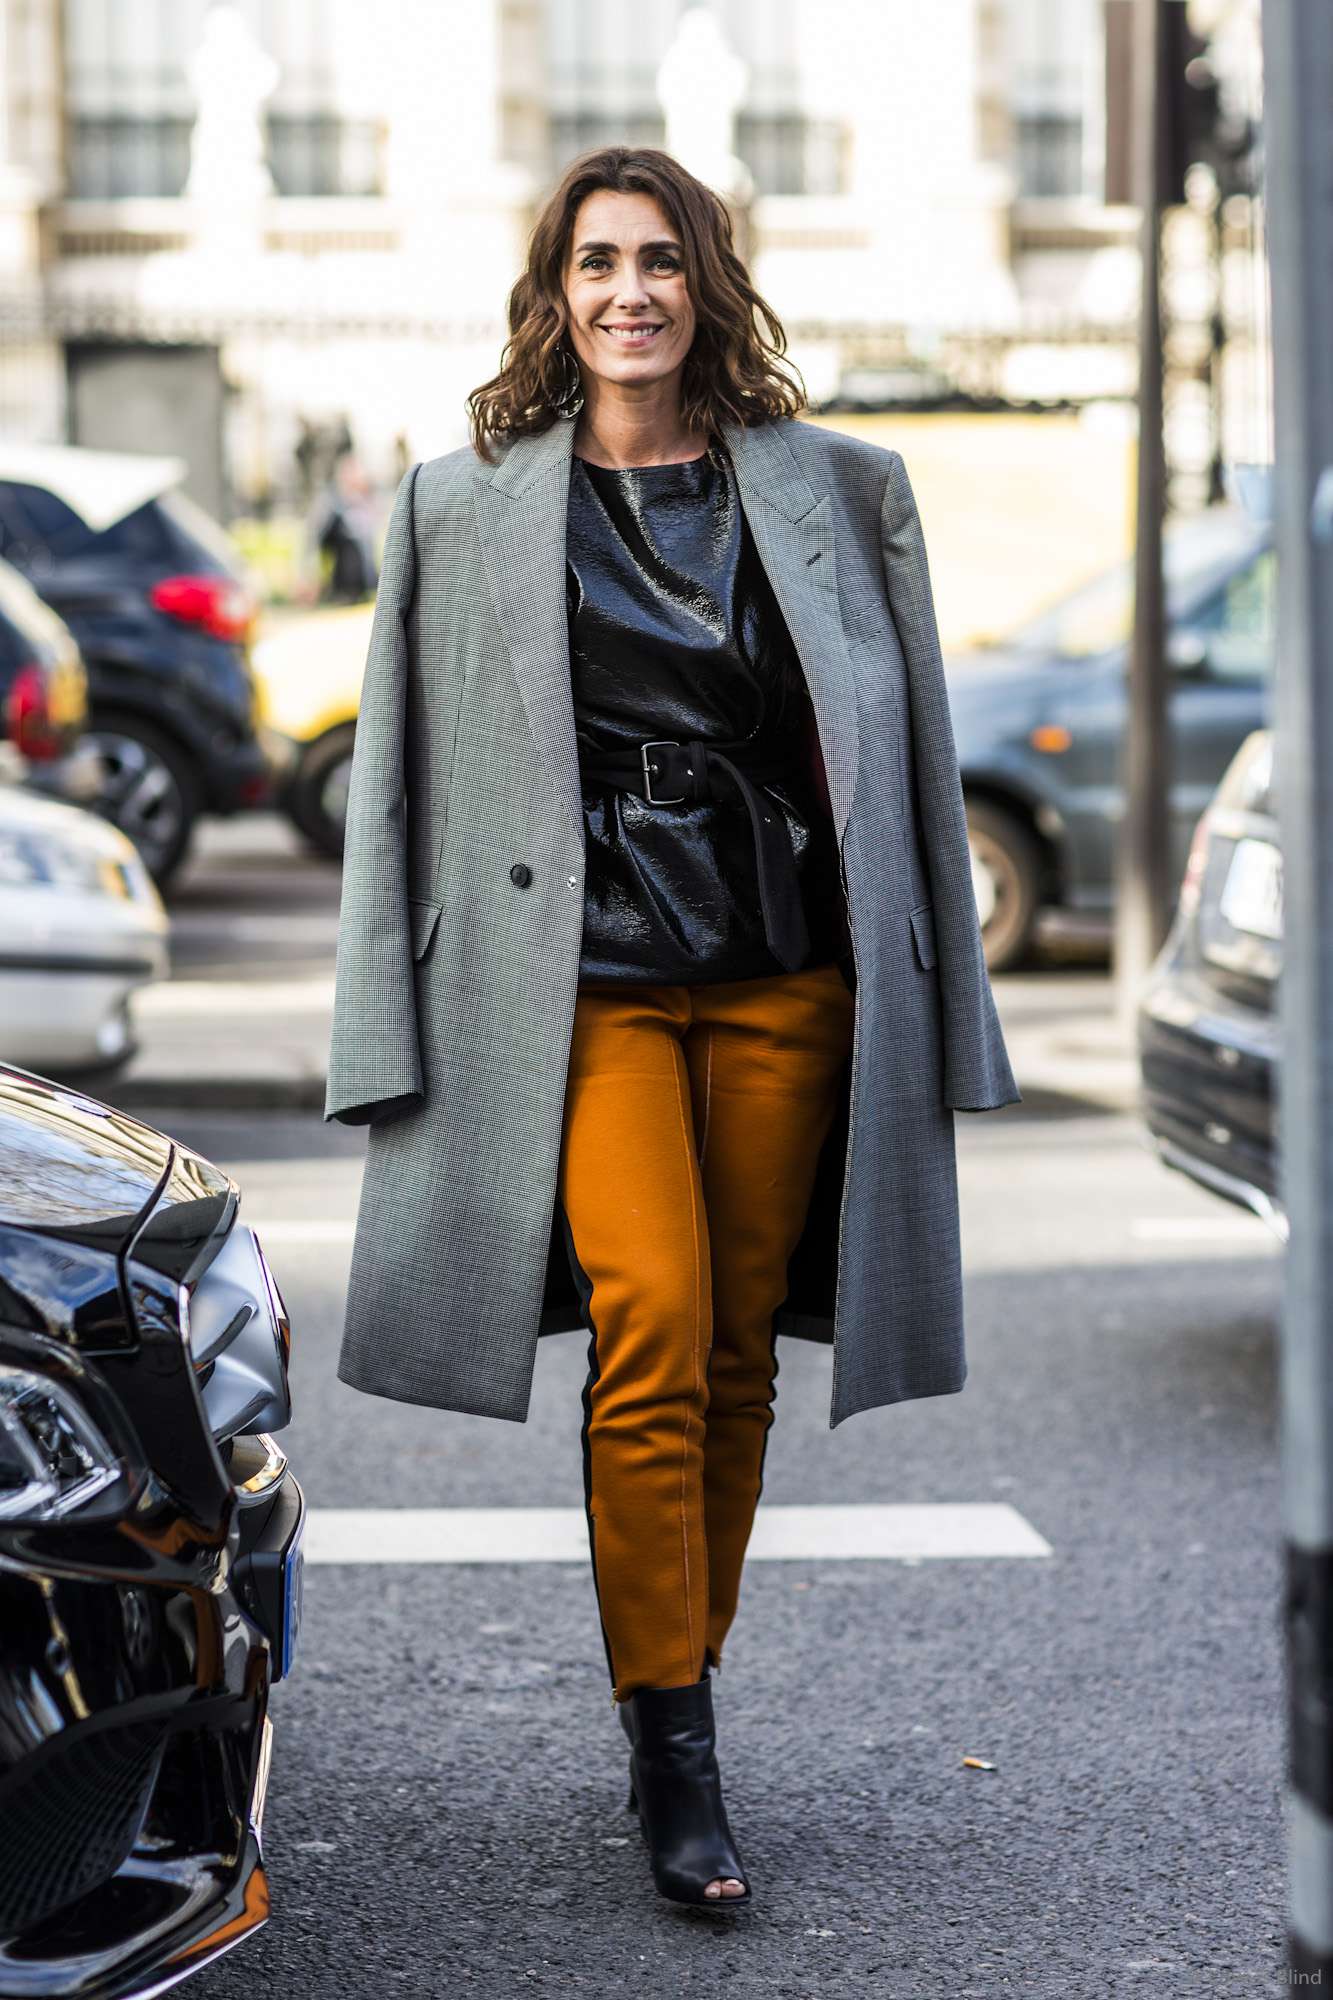 Paris Fashionweek day 1 – Sandra Semburg